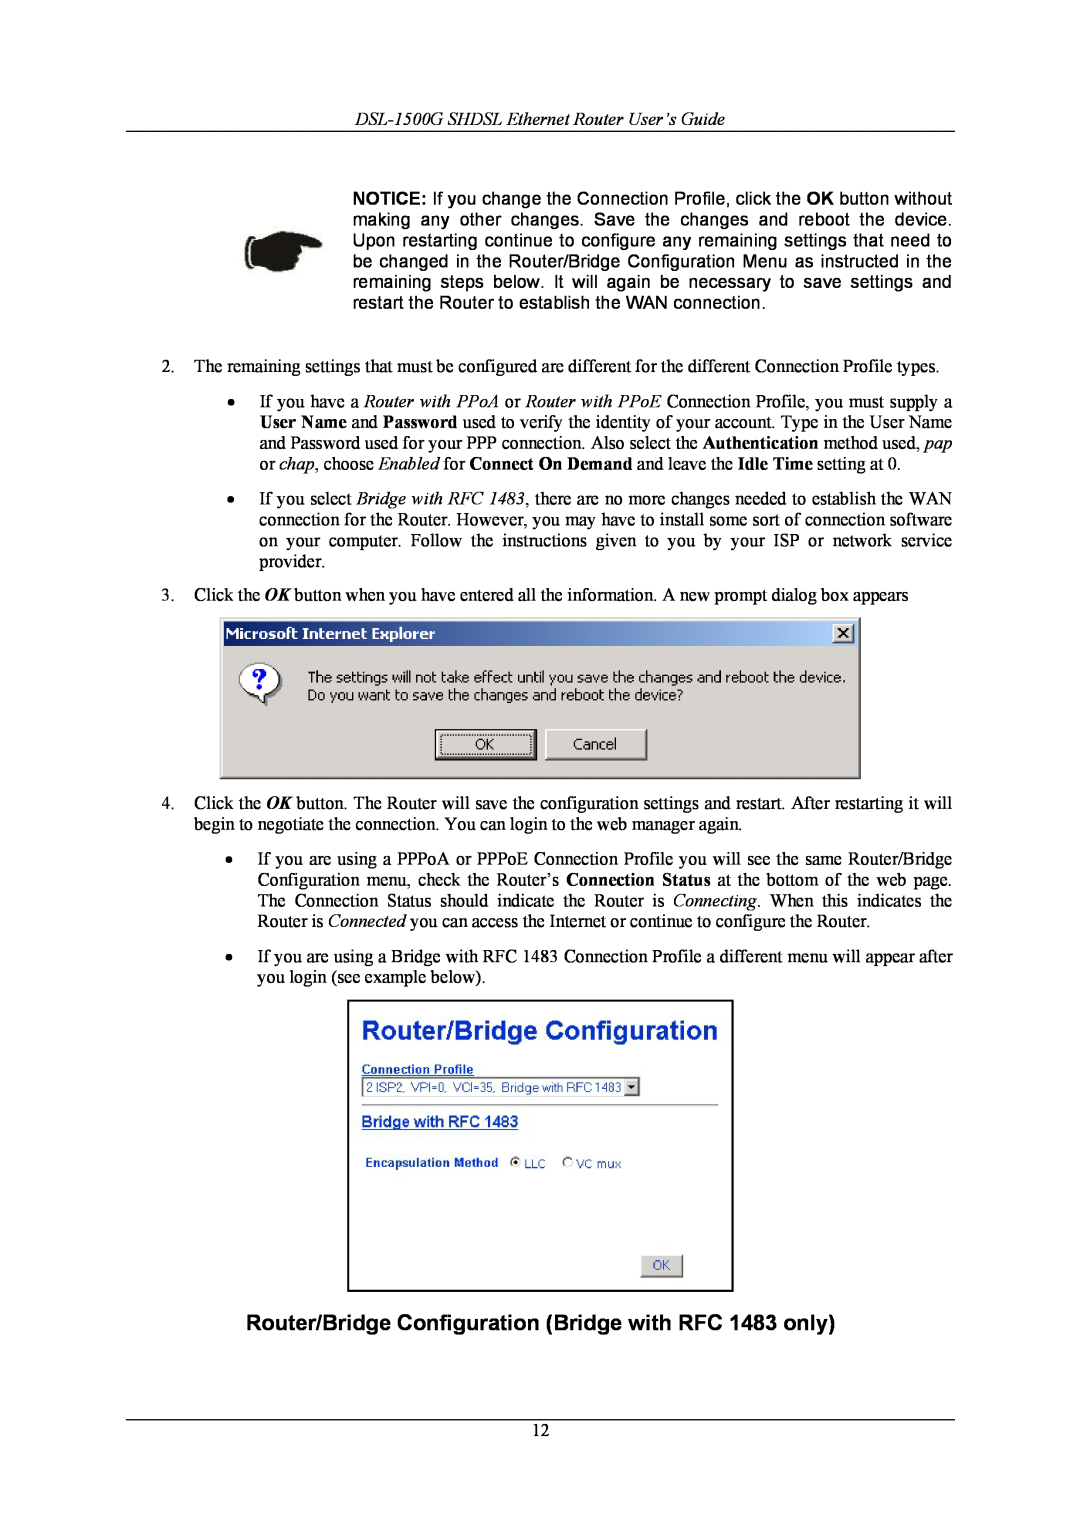 D-Link manual Router/Bridge Configuration Bridge with RFC 1483 only, DSL-1500G SHDSL Ethernet Router User’s Guide 